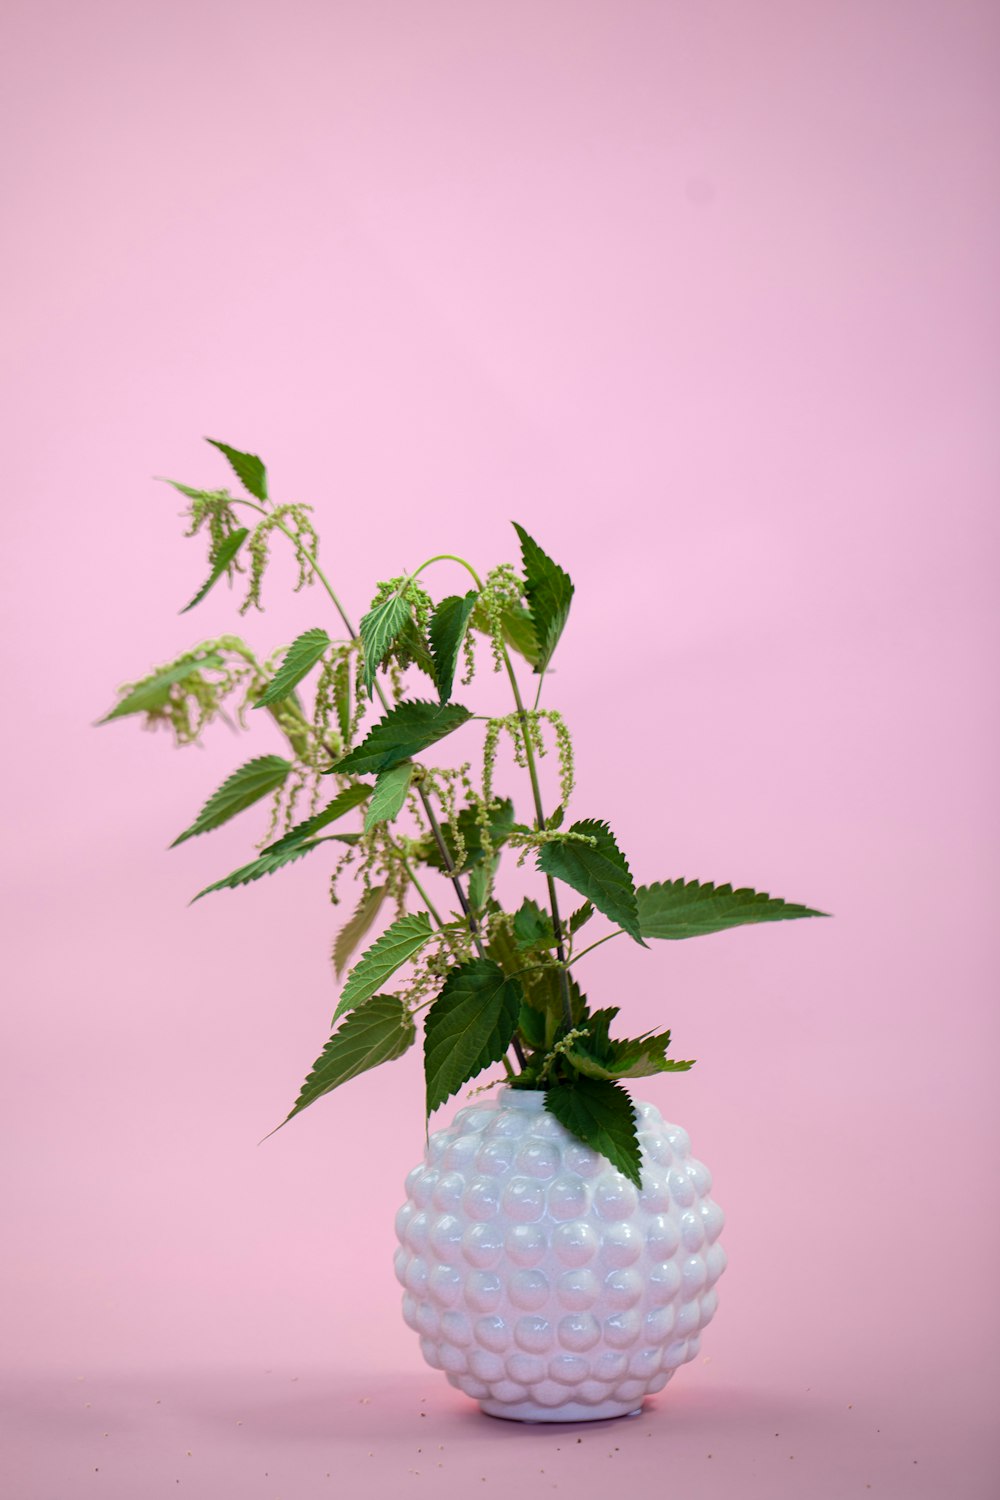 grüne Pflanze auf weißem runden Behälter